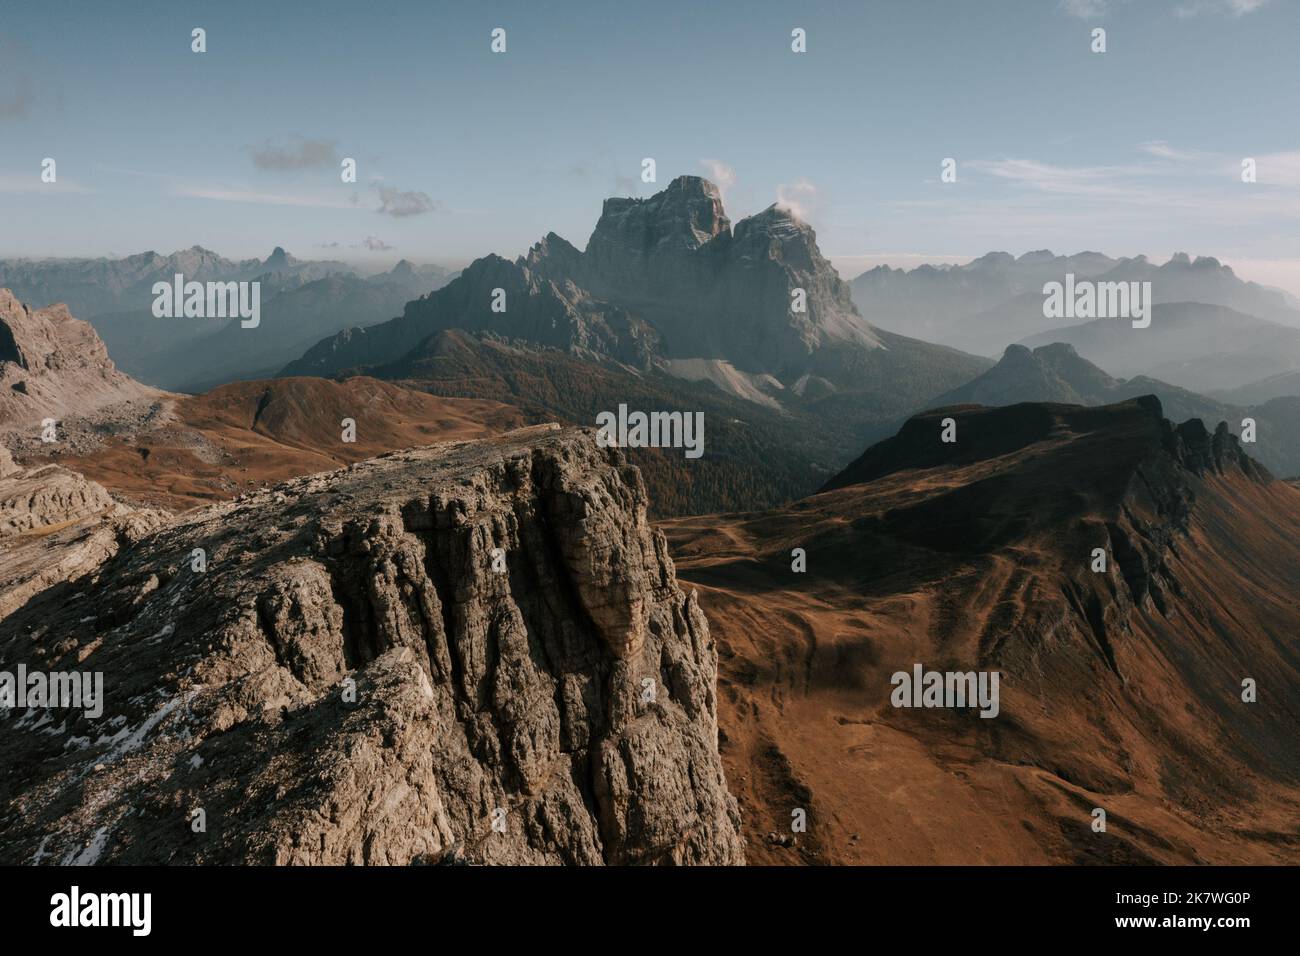 Die Belluner Dolomiten am Passo Giau. Wunderschöner Blick aus der Luft auf den Monte Pelmo im Herbst. Drohnenflug Dolomiten 5 Banque D'Images